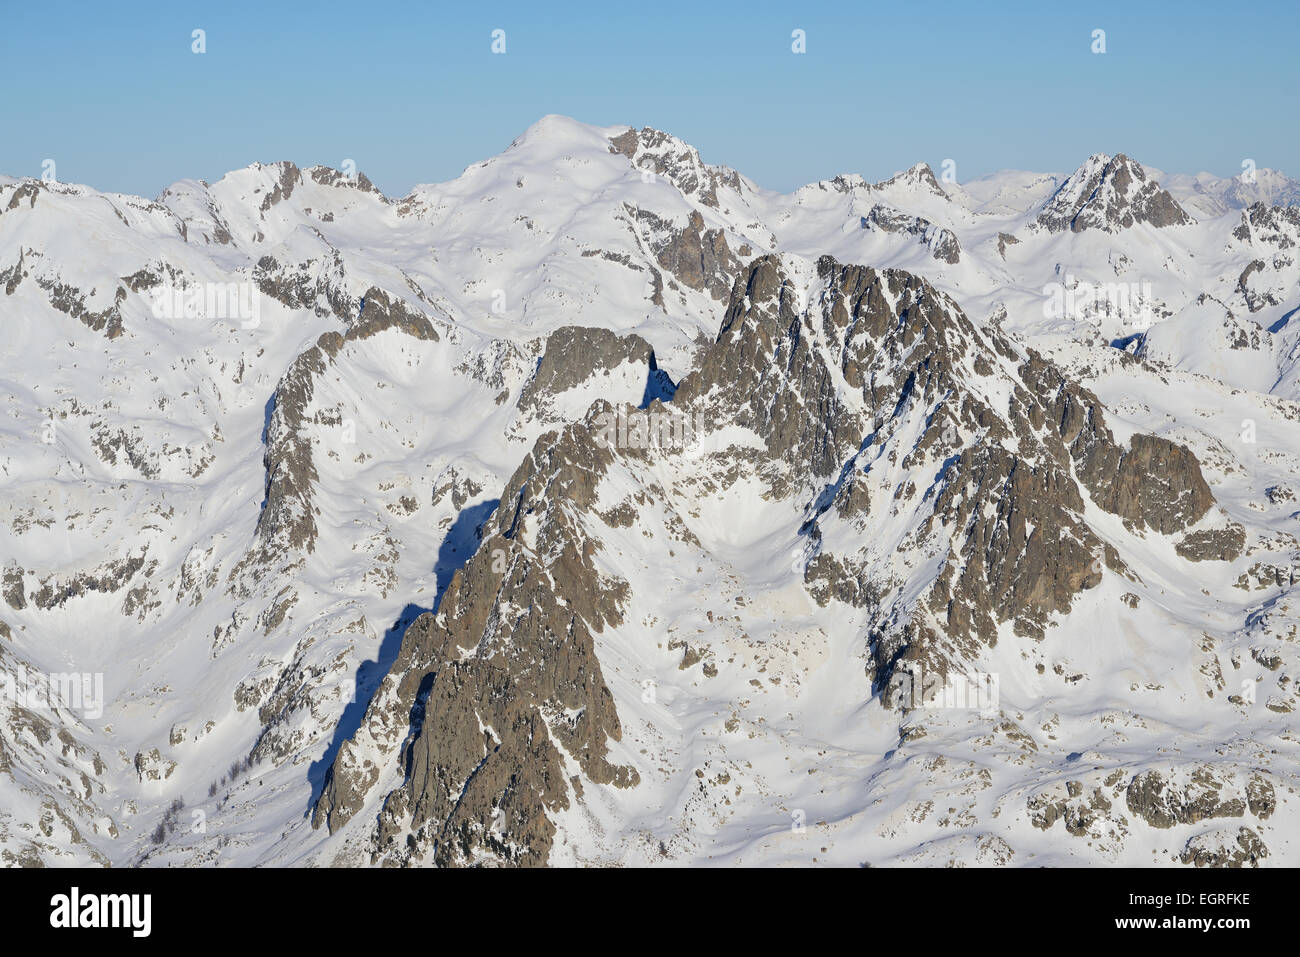 VUE AÉRIENNE.Le mont Clapier est le sommet des Alpes de plus de 3000 mètres de haut le plus proche de la mer Méditerranée (38km seulement).France et Italie. Banque D'Images